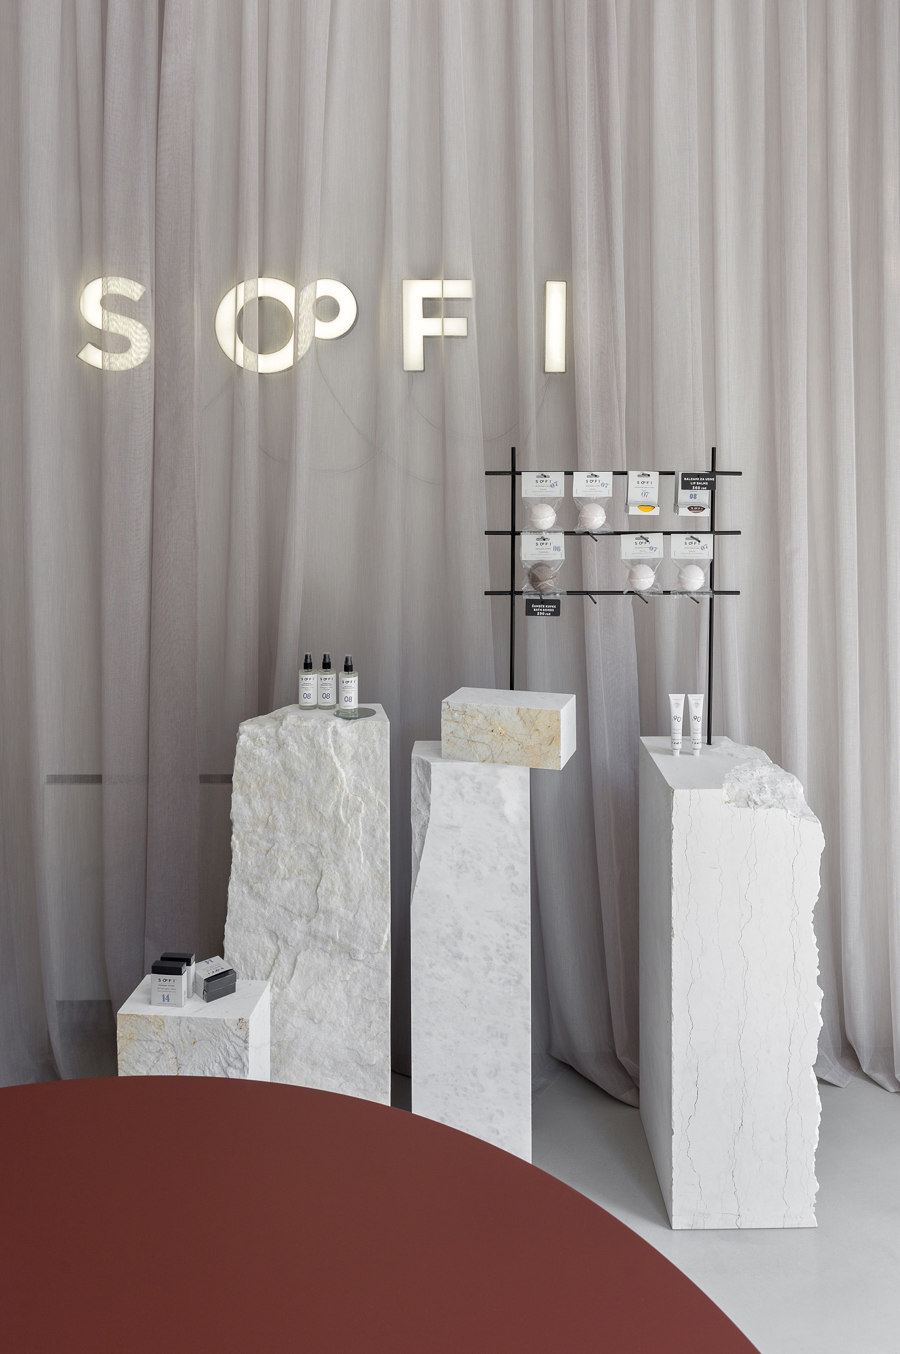 SOFI Natural Cosmetics Shop by Studio AUTORI | Shop interiors